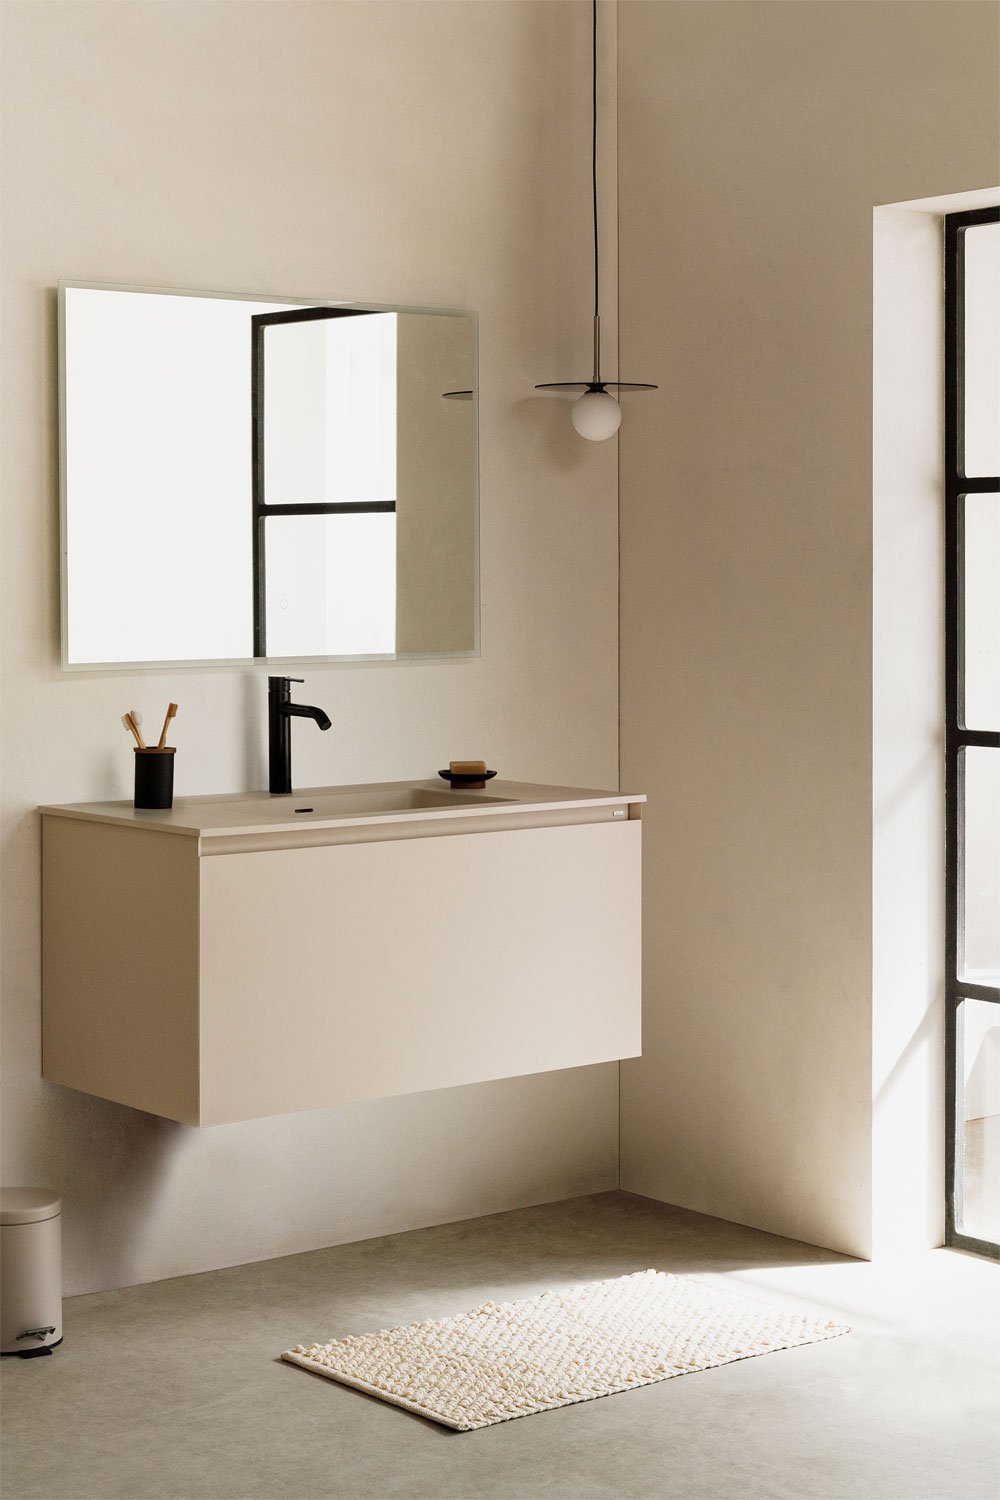 Houten badkamermeubelset met geïntegreerde wastafel en spiegel Macrae, galerij beeld 1